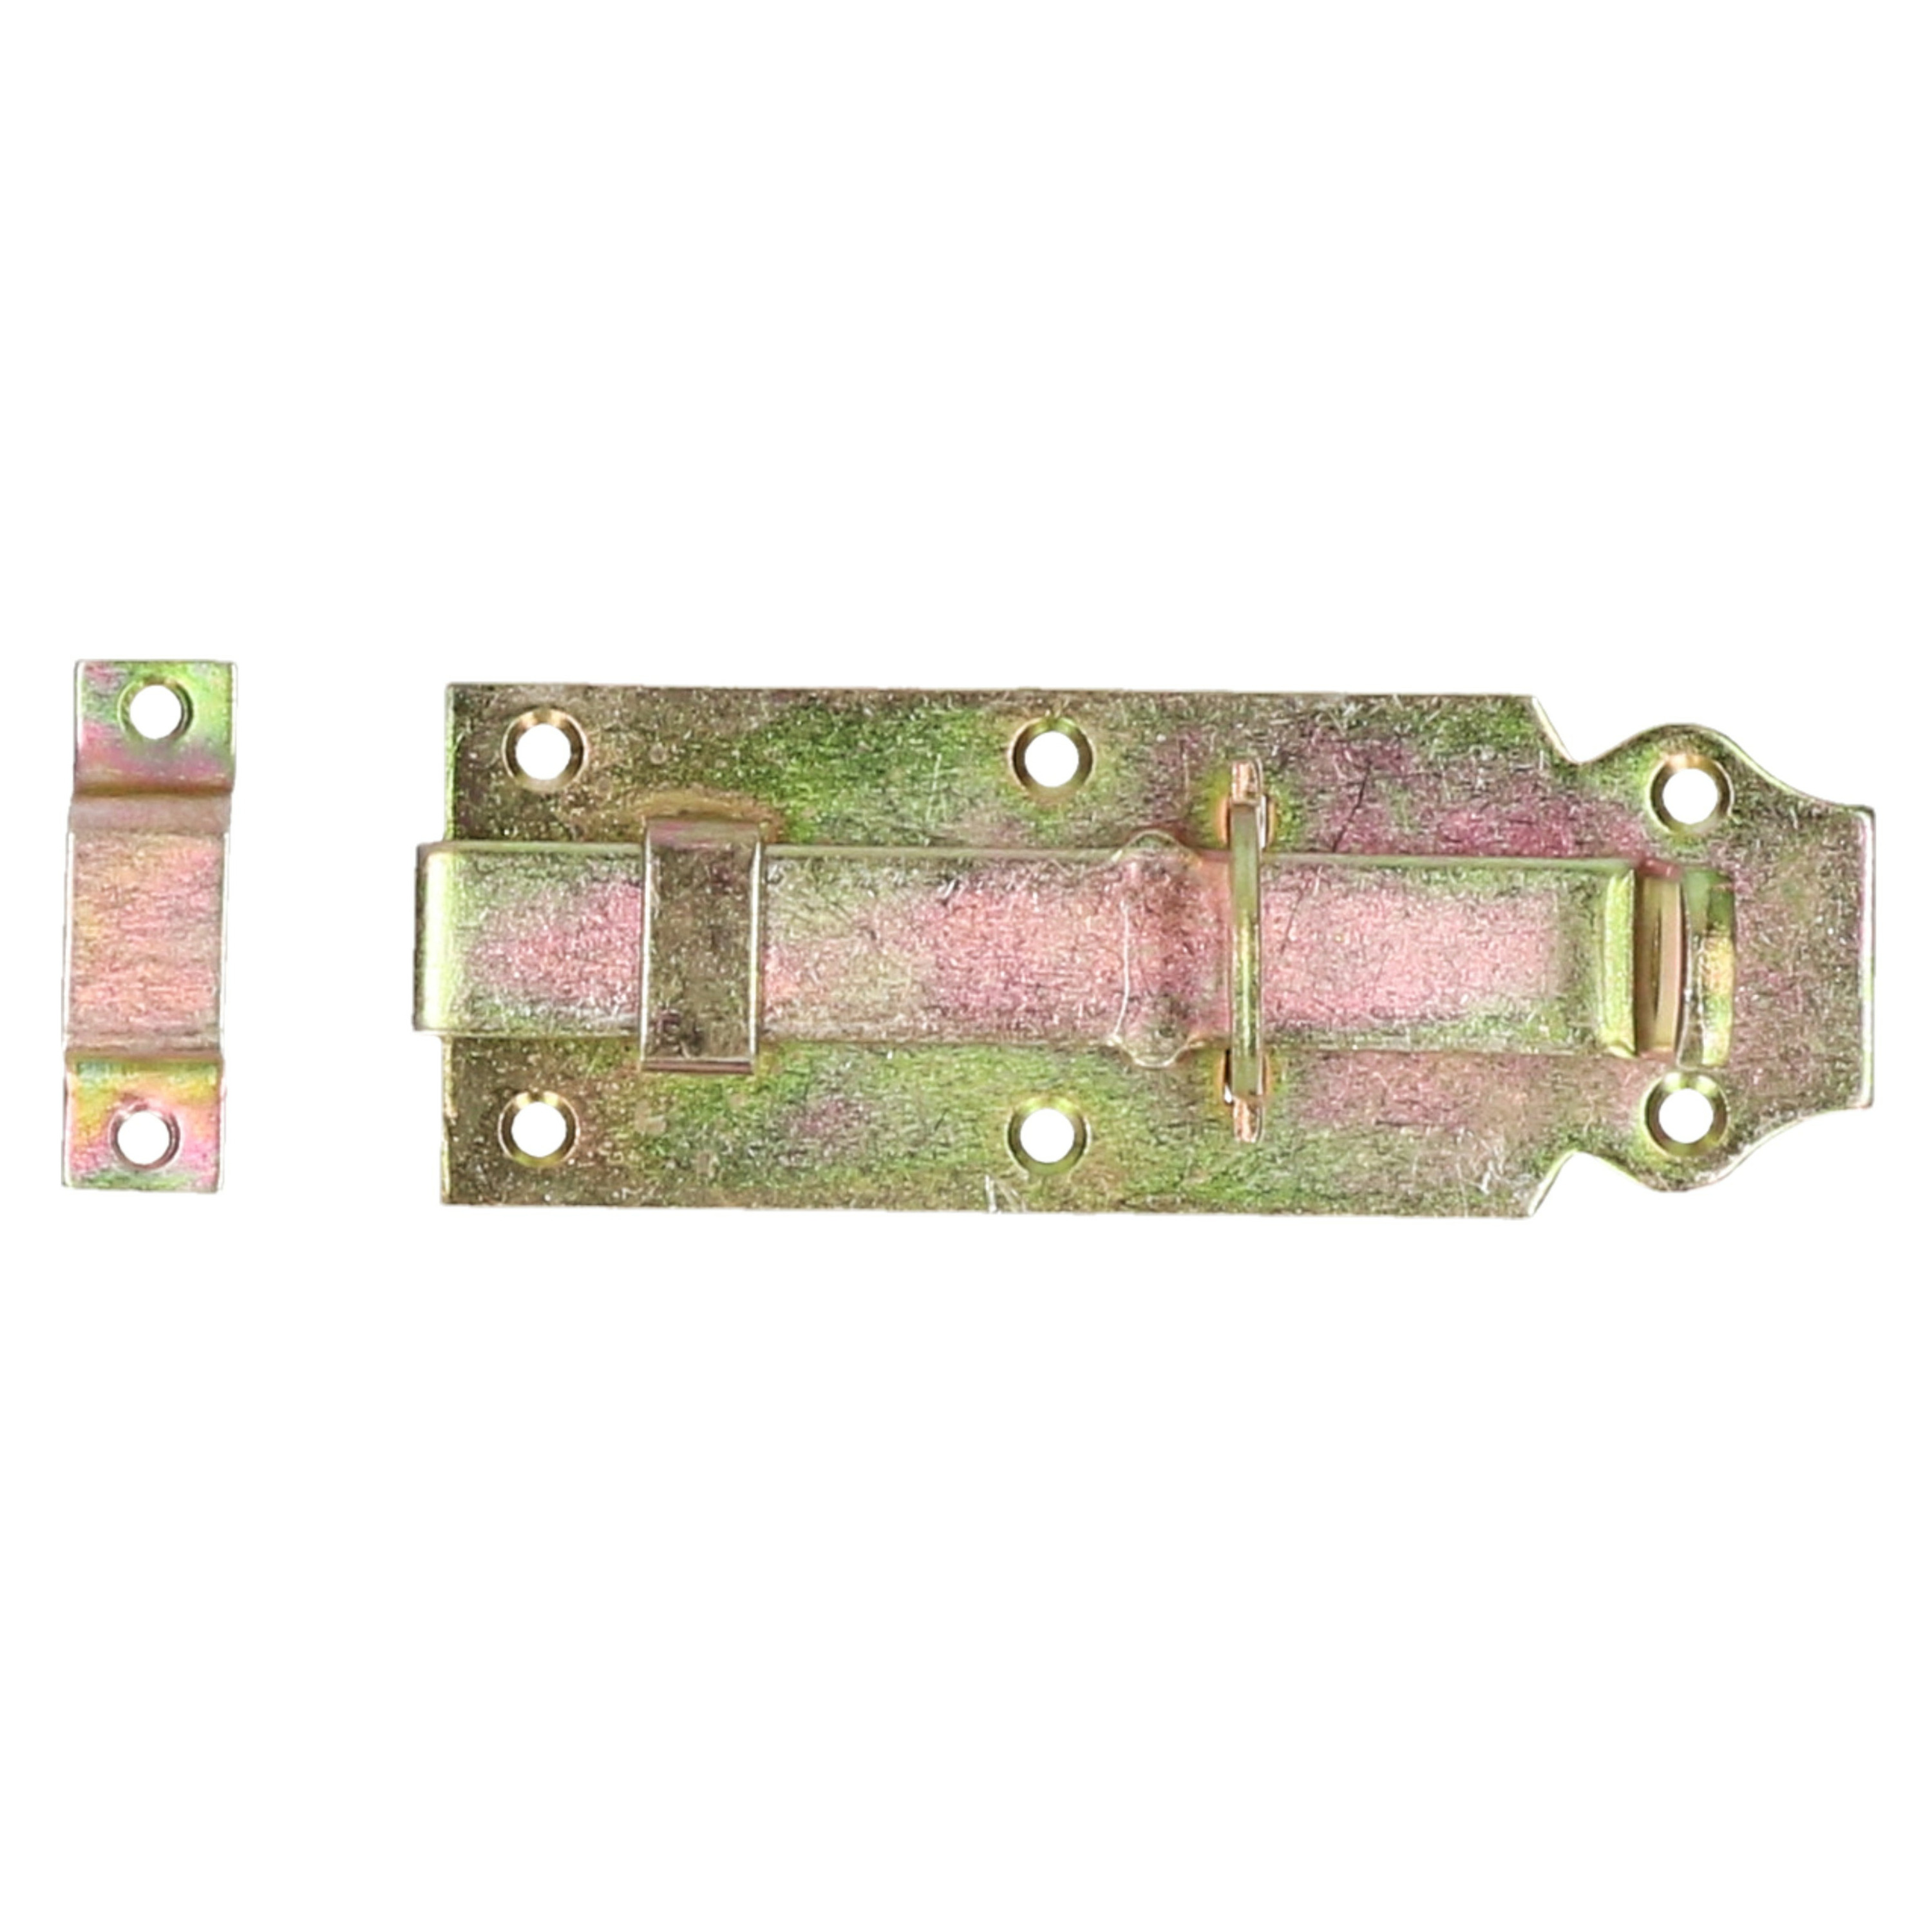 Deltafix schuifslot-hangslotschuif 1x 12 x 4.5cm geel verzinkt staal deur schutting hek